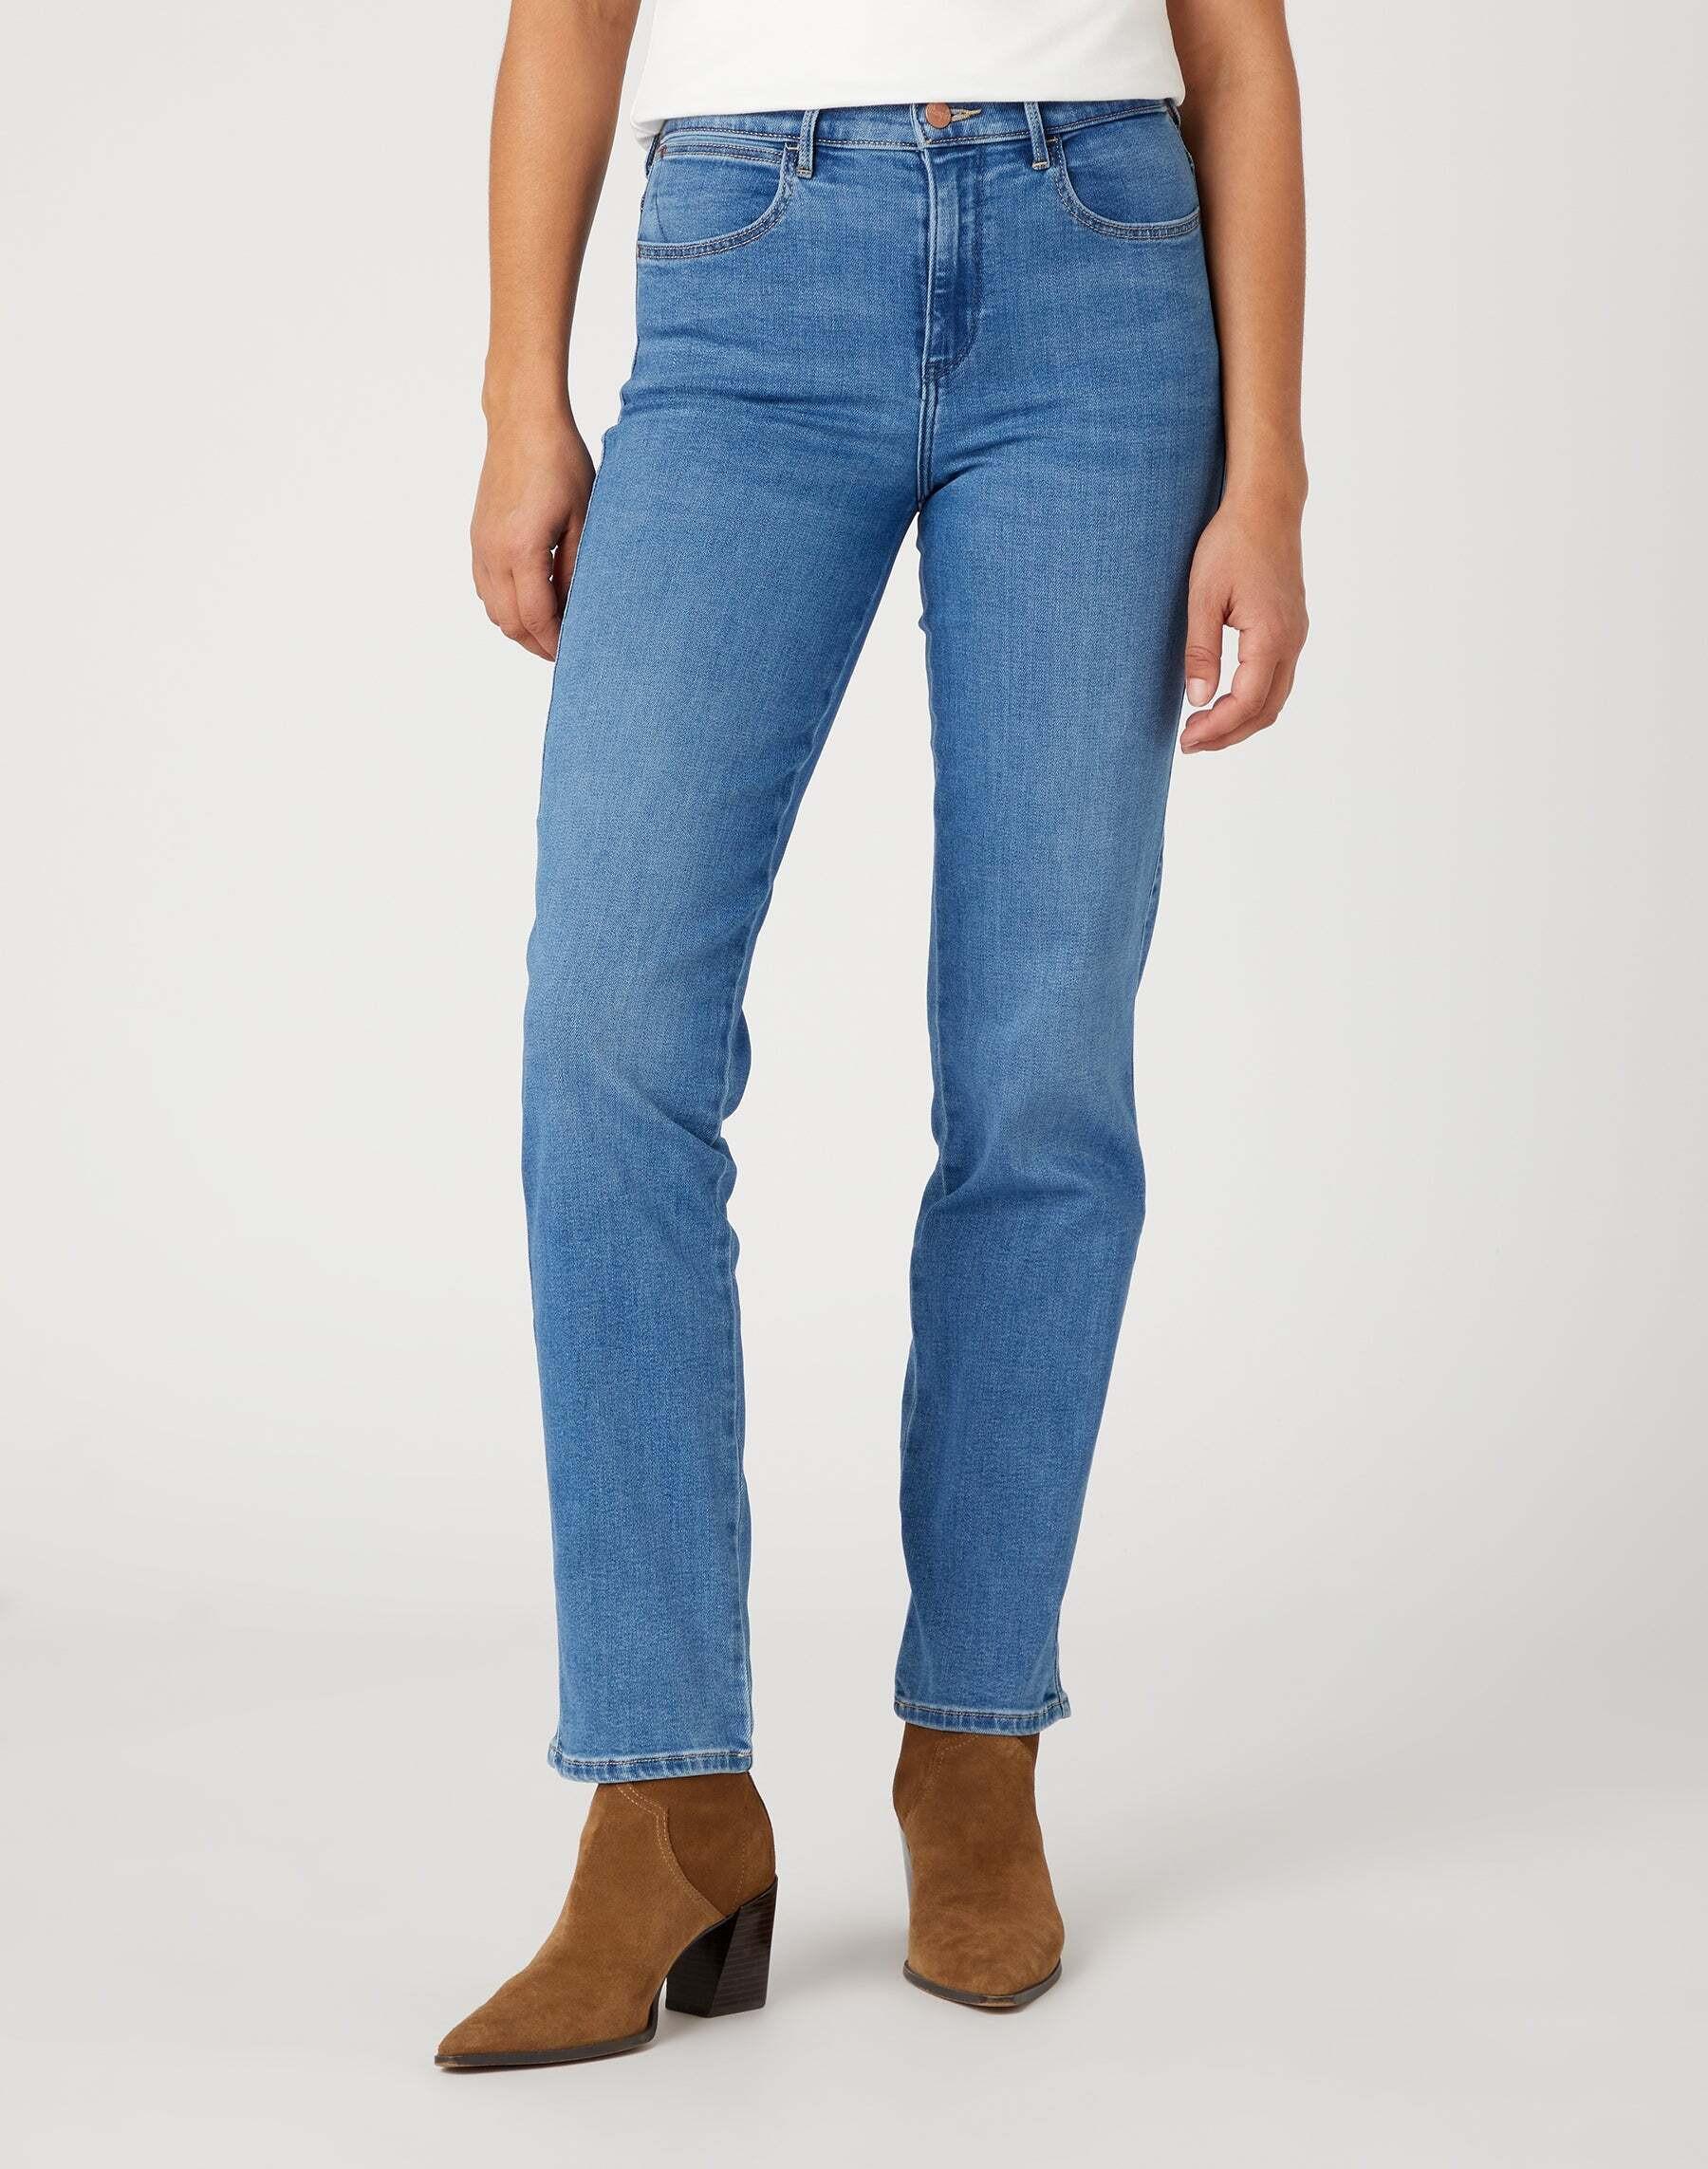 Jeans Straight Damen Hellblau L32/W30 von Wrangler